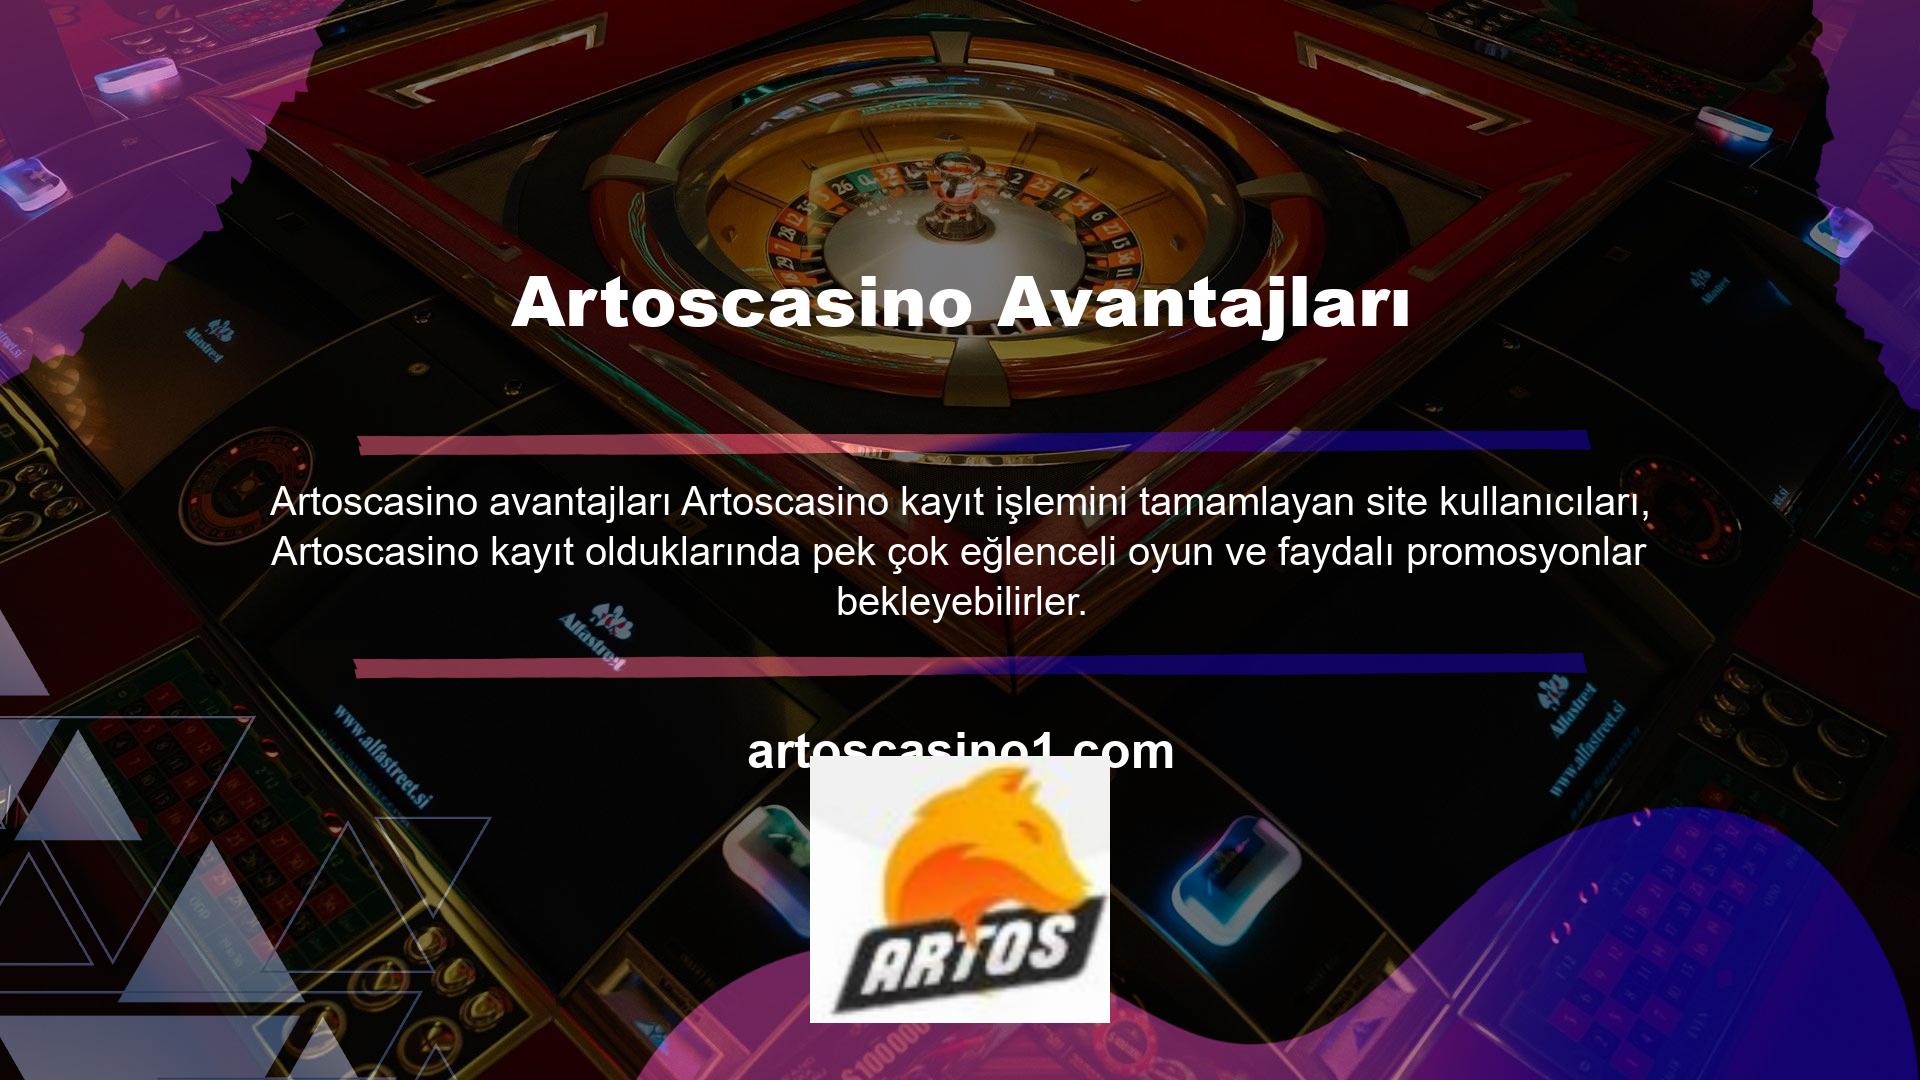 Artoscasino sadece gelir açısından değil, promosyonlar, bahis türleri, çevrimiçi bahis ve casino siteleri gibi içerikler açısından da iyi bir konuma sahiptir